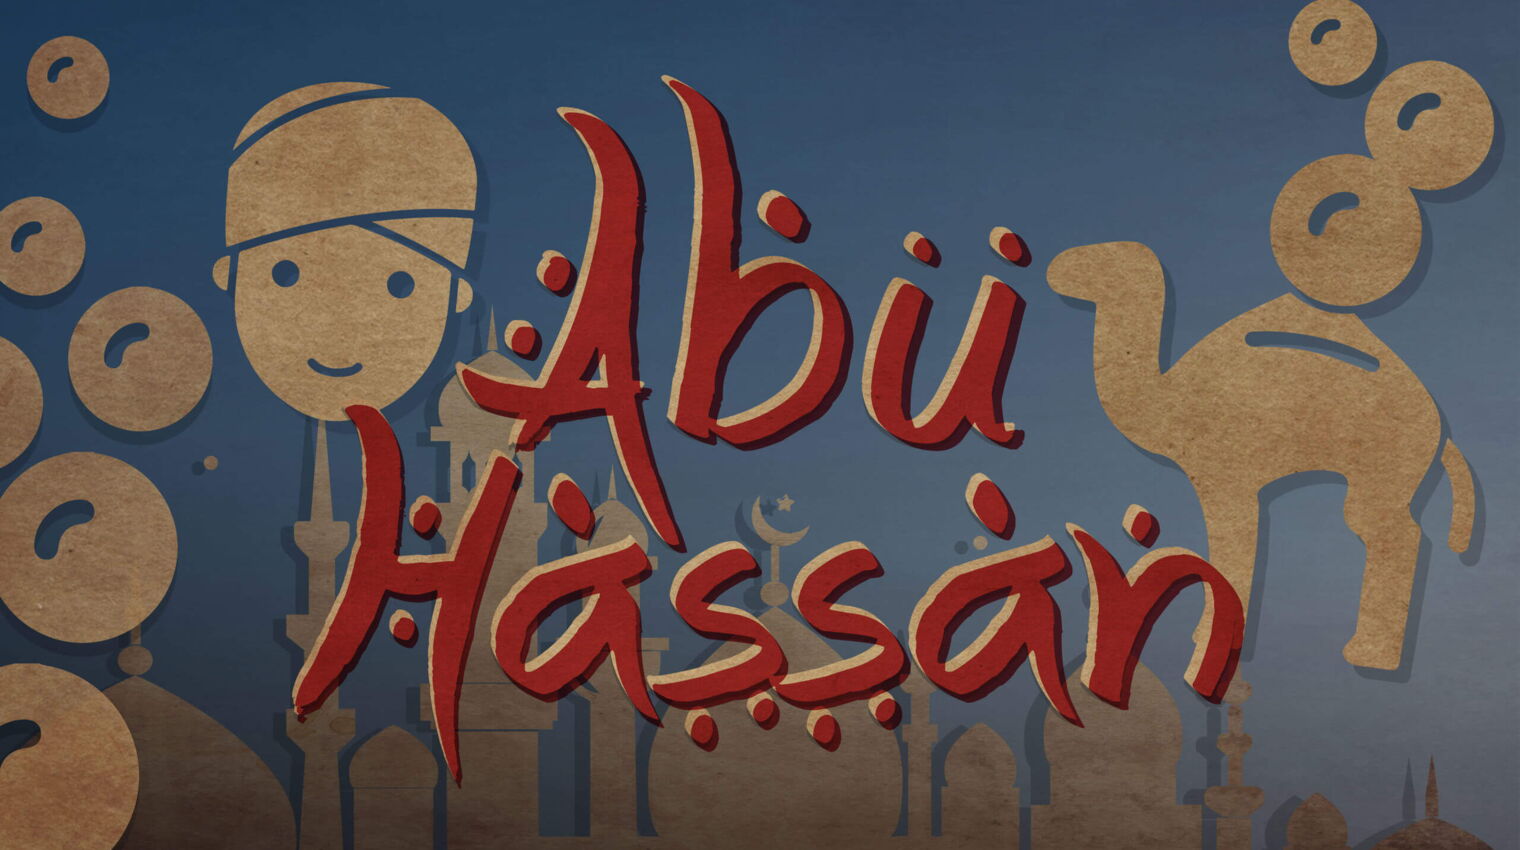 Abu Hassan – Familienoper nach einem Märchen aus »Tausend und einer Nacht« von Carl Maria von Weber